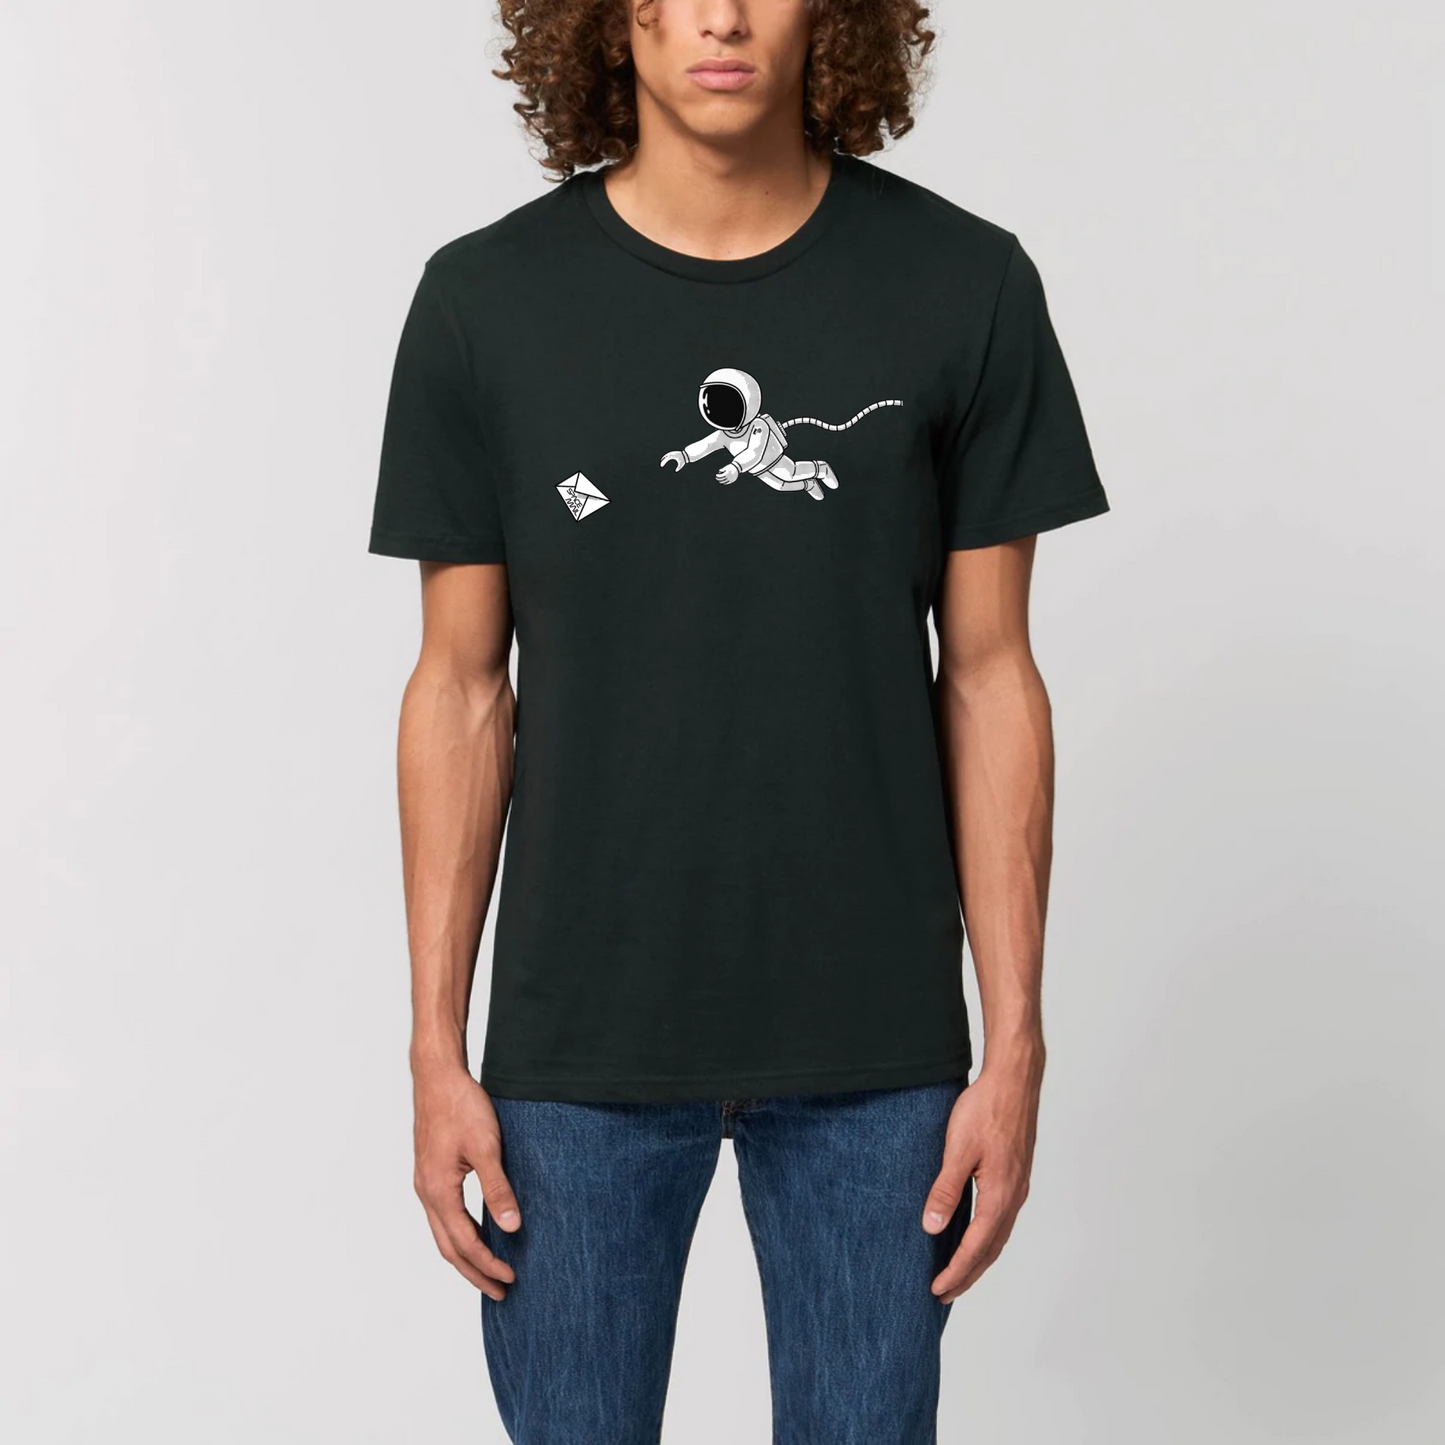 t-shirt homme space mail en coton bio de T-French, t-shirt astronaute, t-shirt espace homme, t-shirt en coton bio pour homme avec un astronaute et une enveloppe, tee shirt homme espace, t-shirt Noir